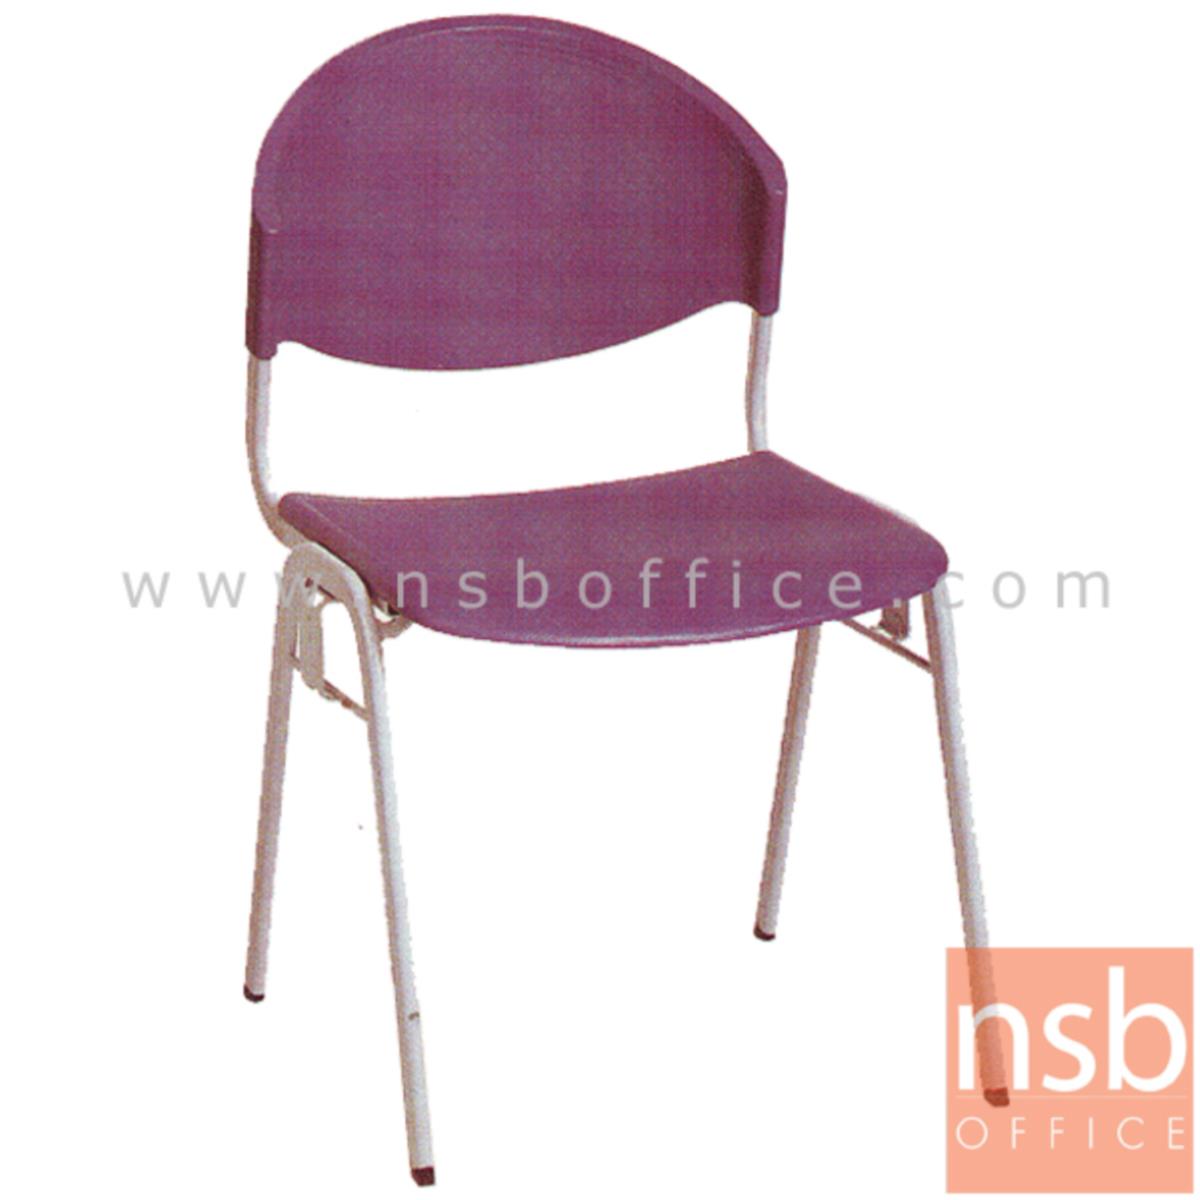 B05A031:เก้าอี้อเนกประสงค์เฟรมโพลี่   มีตัวเกี่ยวด้านข้าง ขาวีคว่ำ